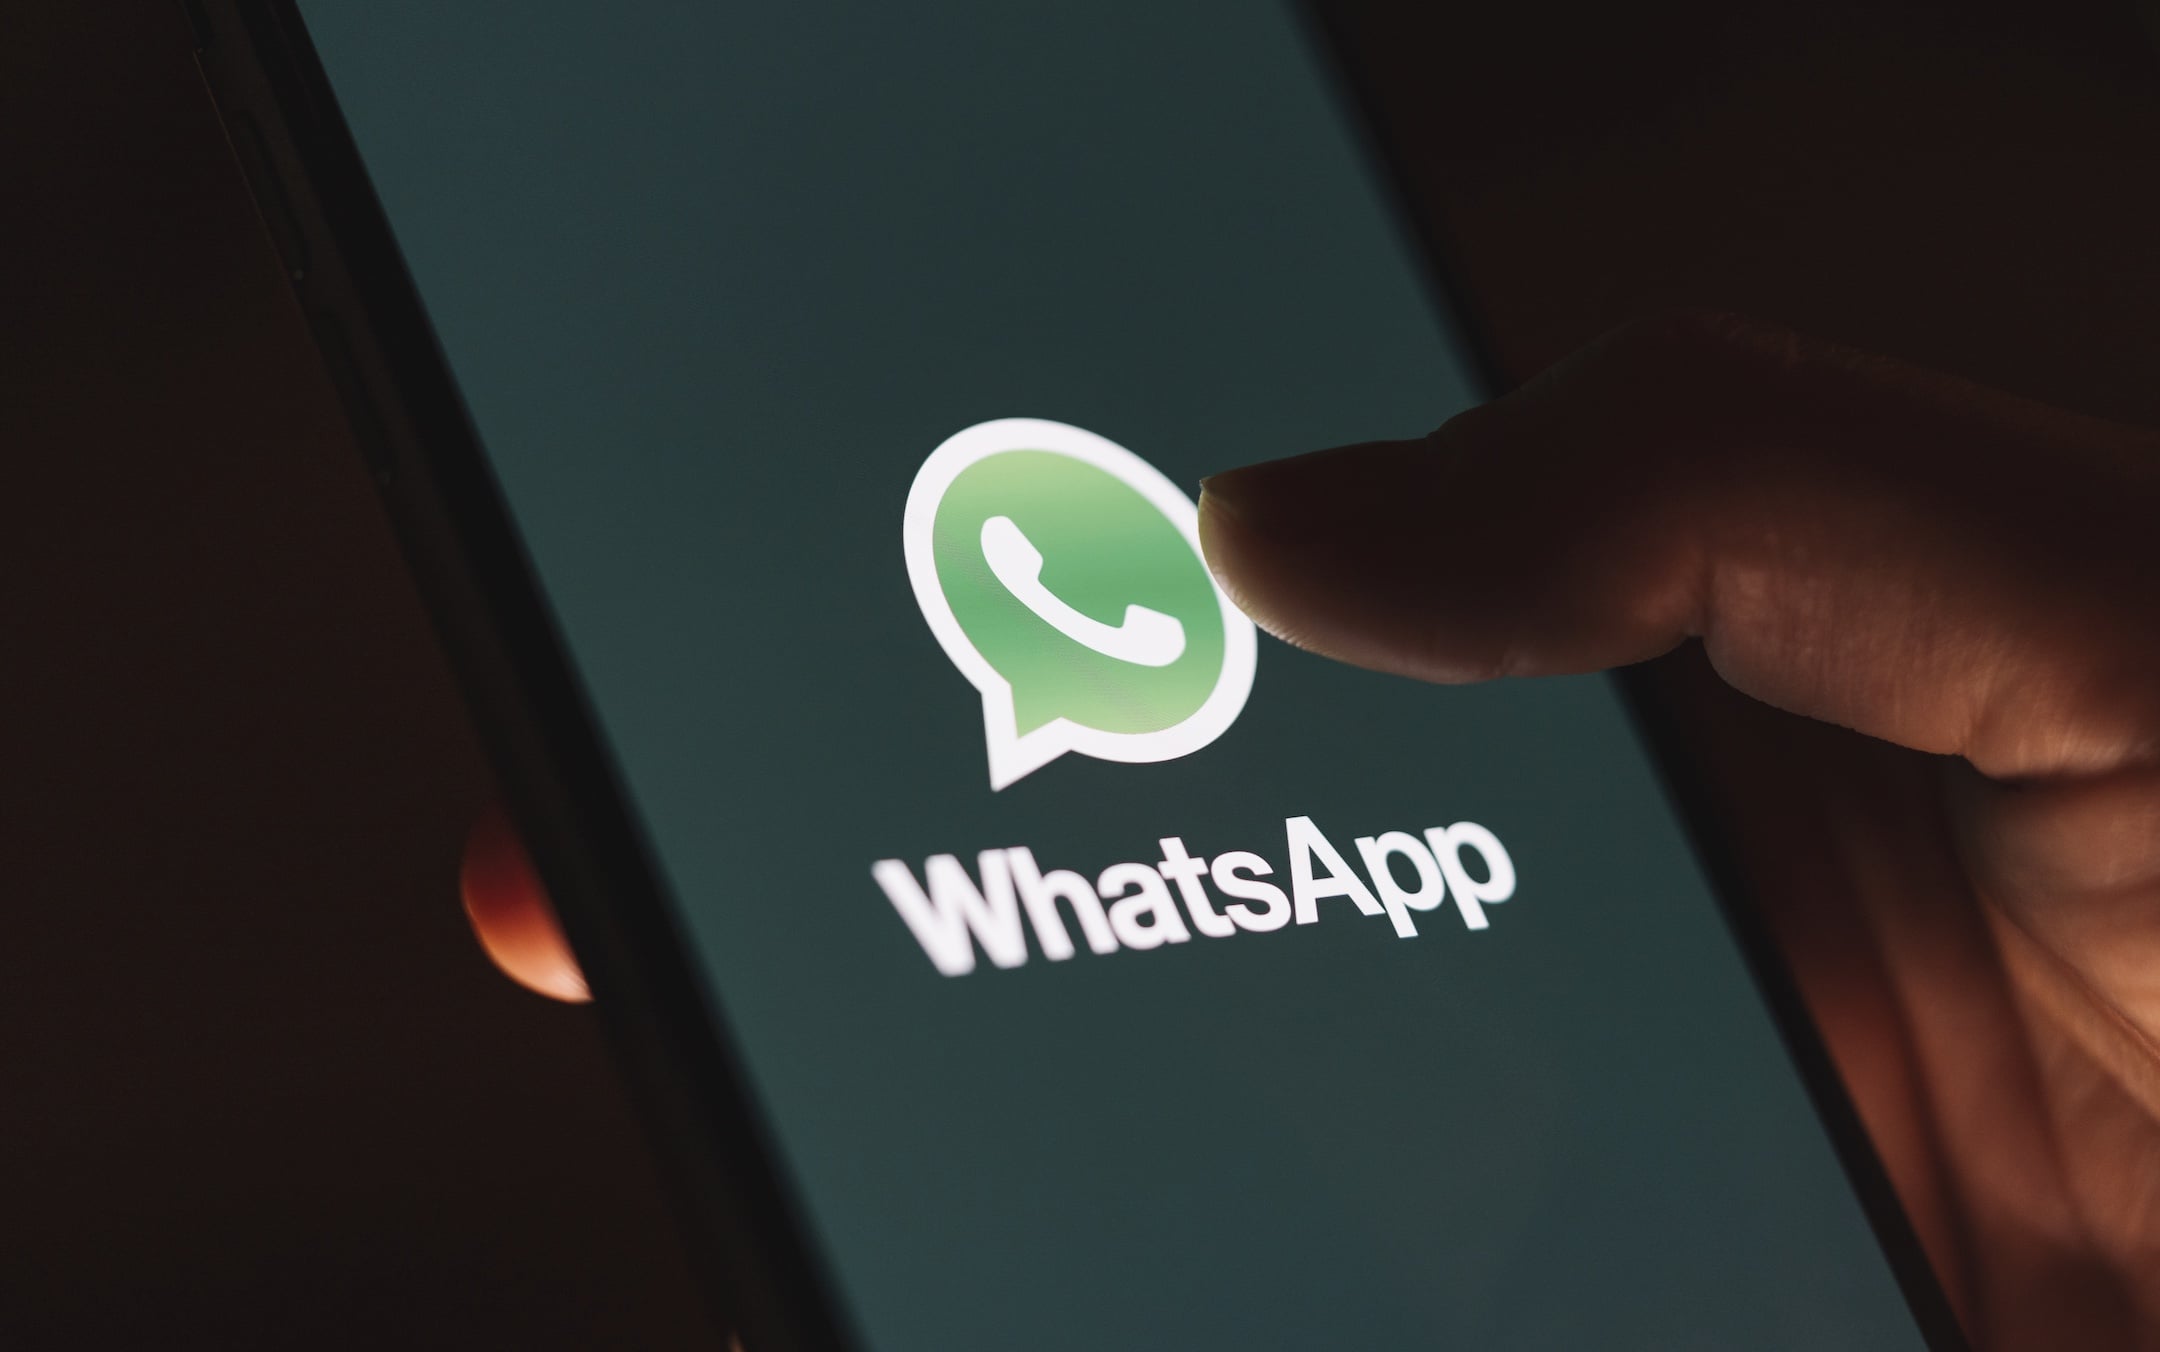 Cei peste 2 miliarde de utilizatori WhatsApp vor avea, de asemenea, posibilitatea să-i împiedice pe alţii să facă capturi de ecran ale mesajelor "menite să fie văzute o singură dată", care sunt concepute să dispară după ce au fost deschise